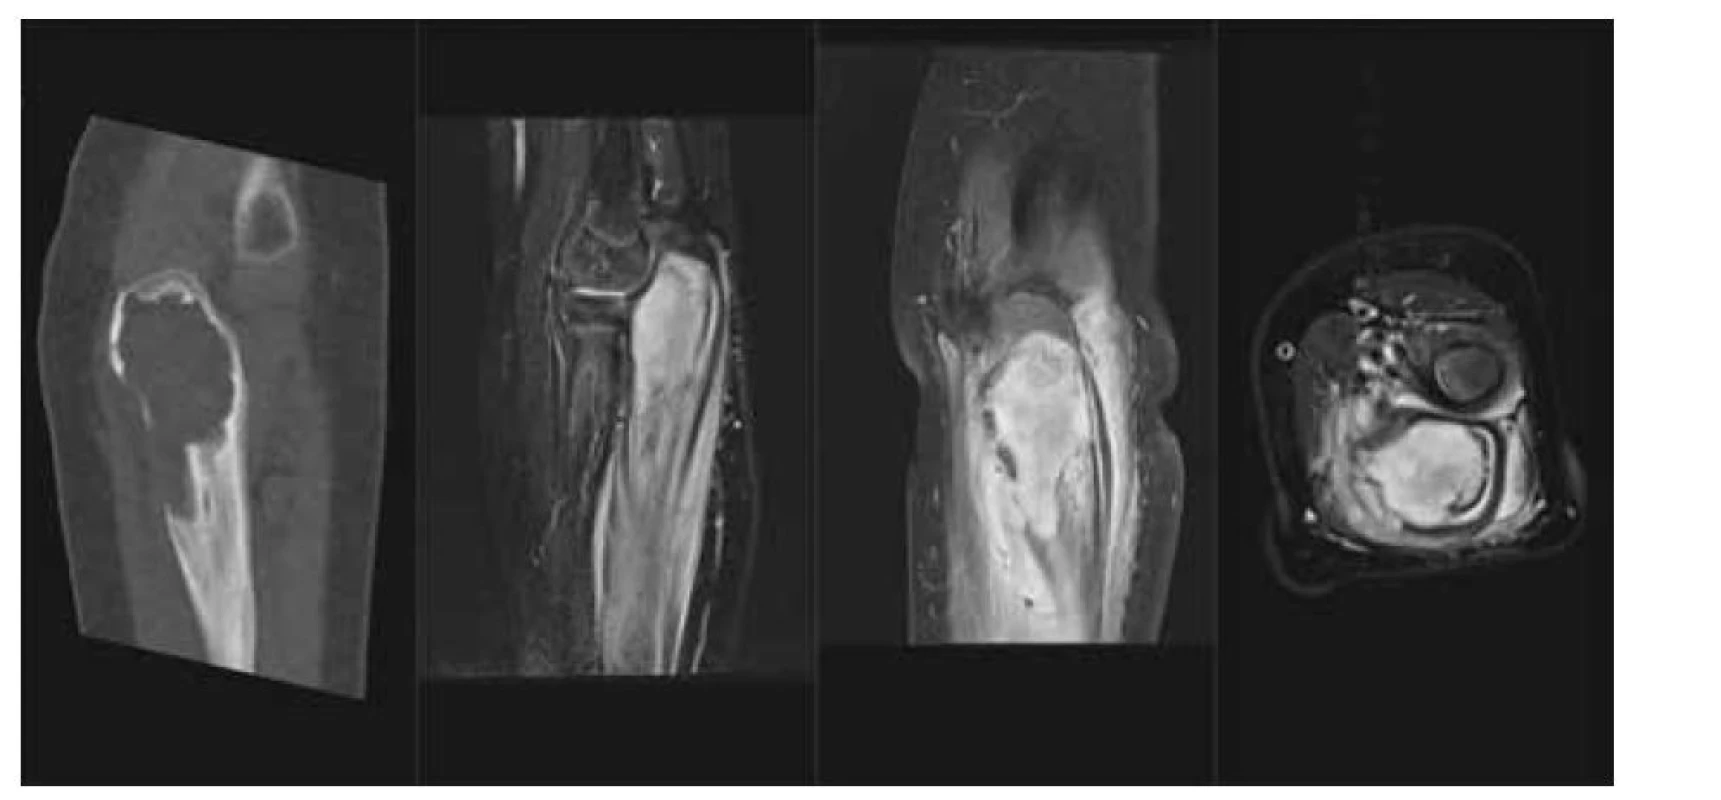 LCH – kostní tumor: a) CT scan v kostním okně, nativně, osteolytické ložisko proximální ulny
a olecranu, b) MR T2 STIR scan v sagitálním řezu, solidní infiltrace kostní dřeně proximální ulny, periostální
reakce, c) MR T1 scan s potlačením tuku v sagitální rovině, tumor kosti, extraoseální šíření
a periostální reakce, d) MR T1 s potlačením tuku v axiální rovině, tumor proximální ulny s extraoseální
propagací.<br>
Fig. 2. LCH – tumor of proximal ulna: a) lytic lesion on CT scan, b) soft tissue tumor, edema and periostosis
of the ulna on MR STIR scan, c) enhancing tumor with extraosseoal spred on T1 fs in sagital plane and d)
in axial plane.